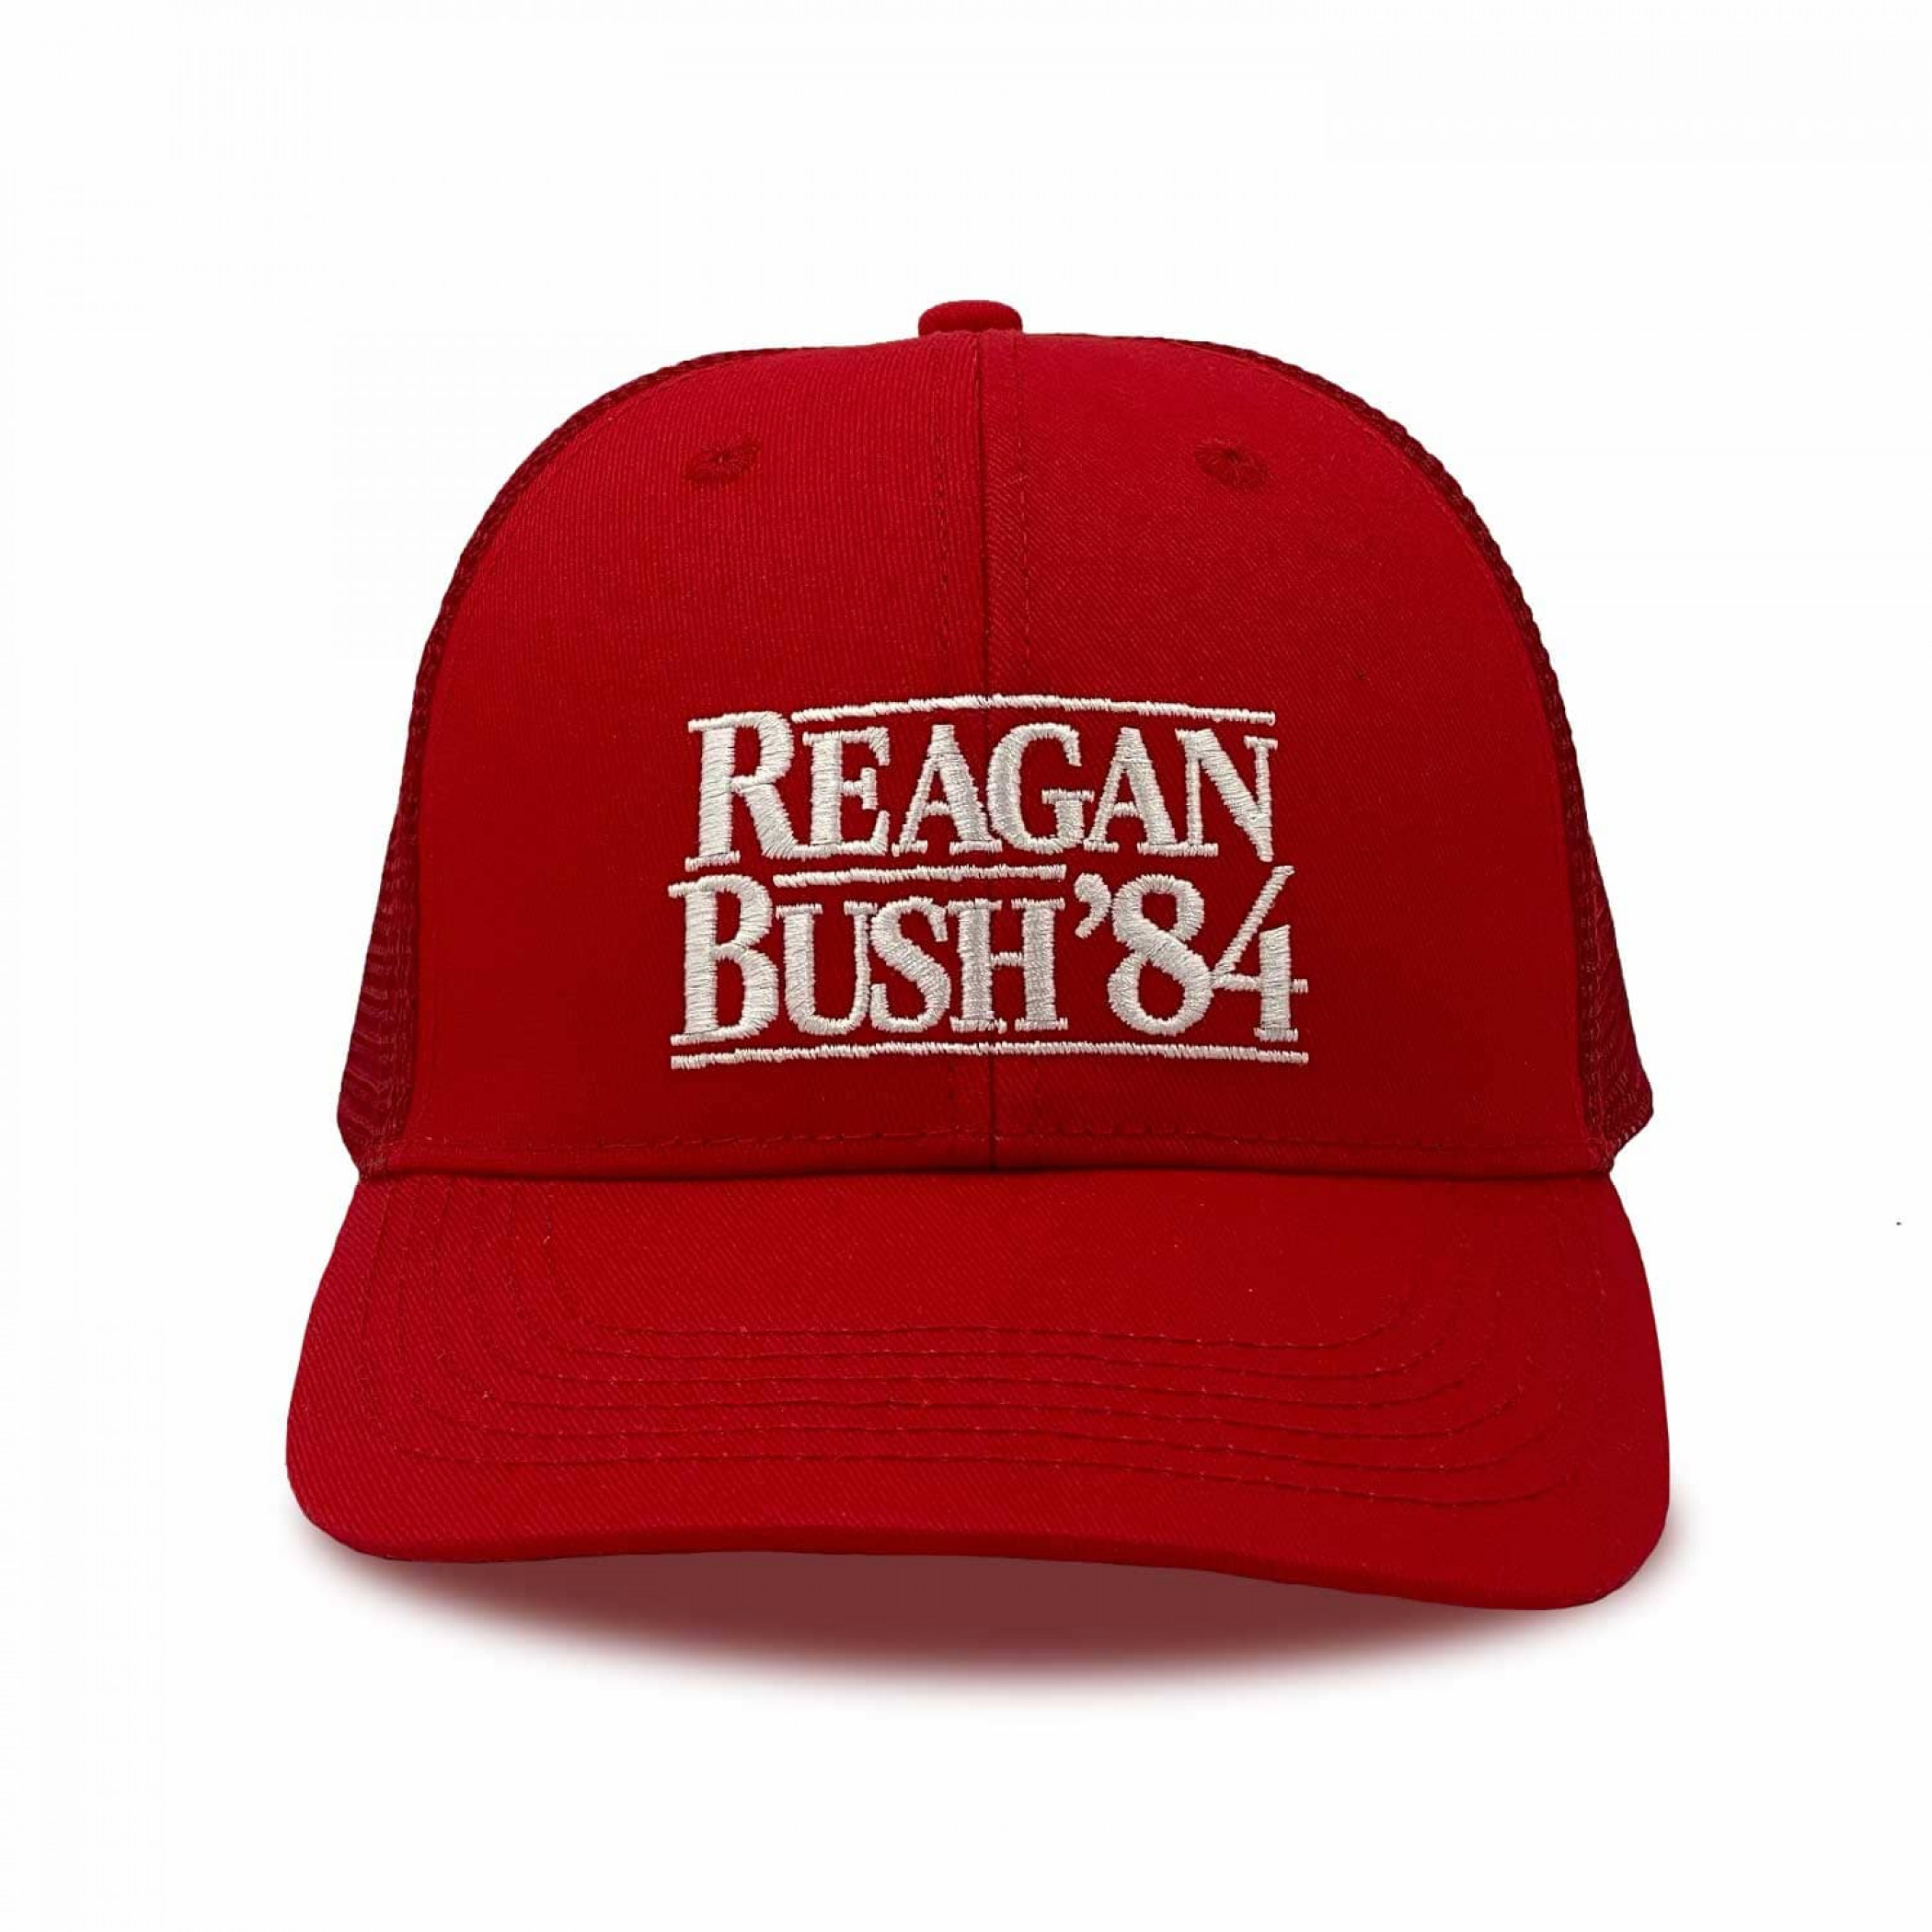 Reagan Bush '84 Red Trucker Hat